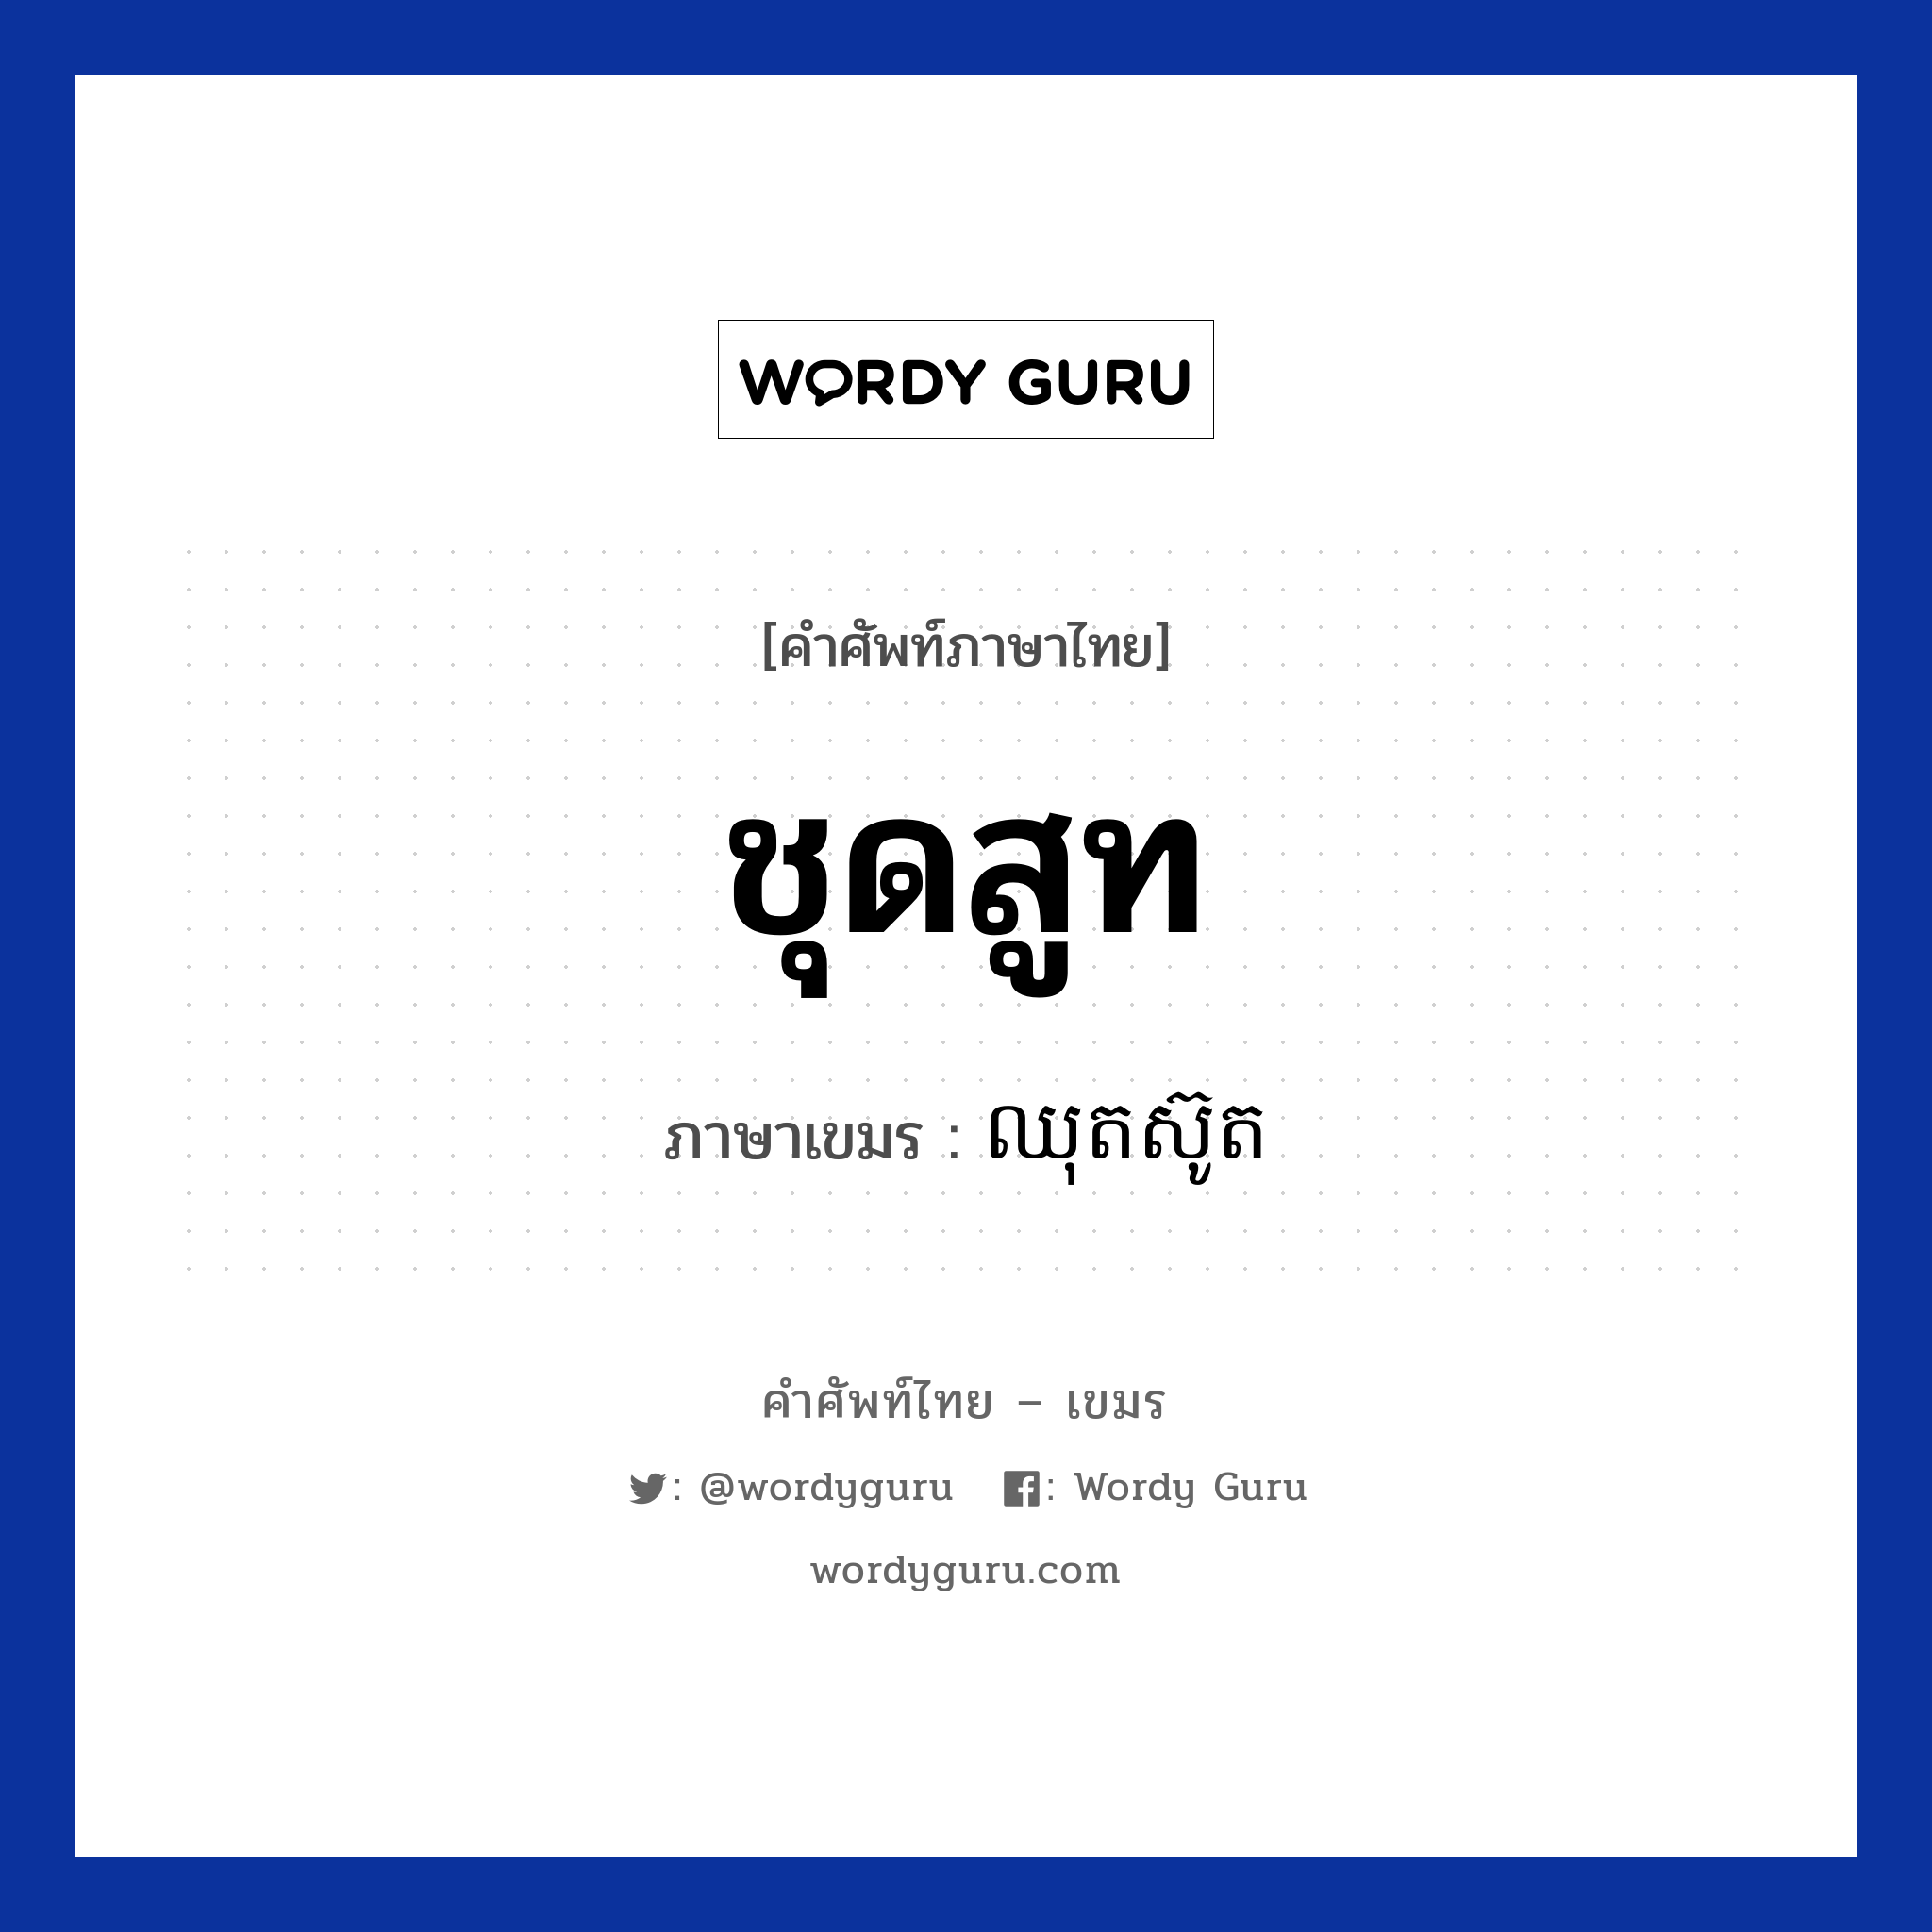 ឈុតស៊ូត ภาษาไทย?, คำศัพท์ภาษาไทย - เขมร ឈុតស៊ូត ภาษาเขมร ชุดสูท หมวด เสื้อผ้า Chhut suth หมวด เสื้อผ้า